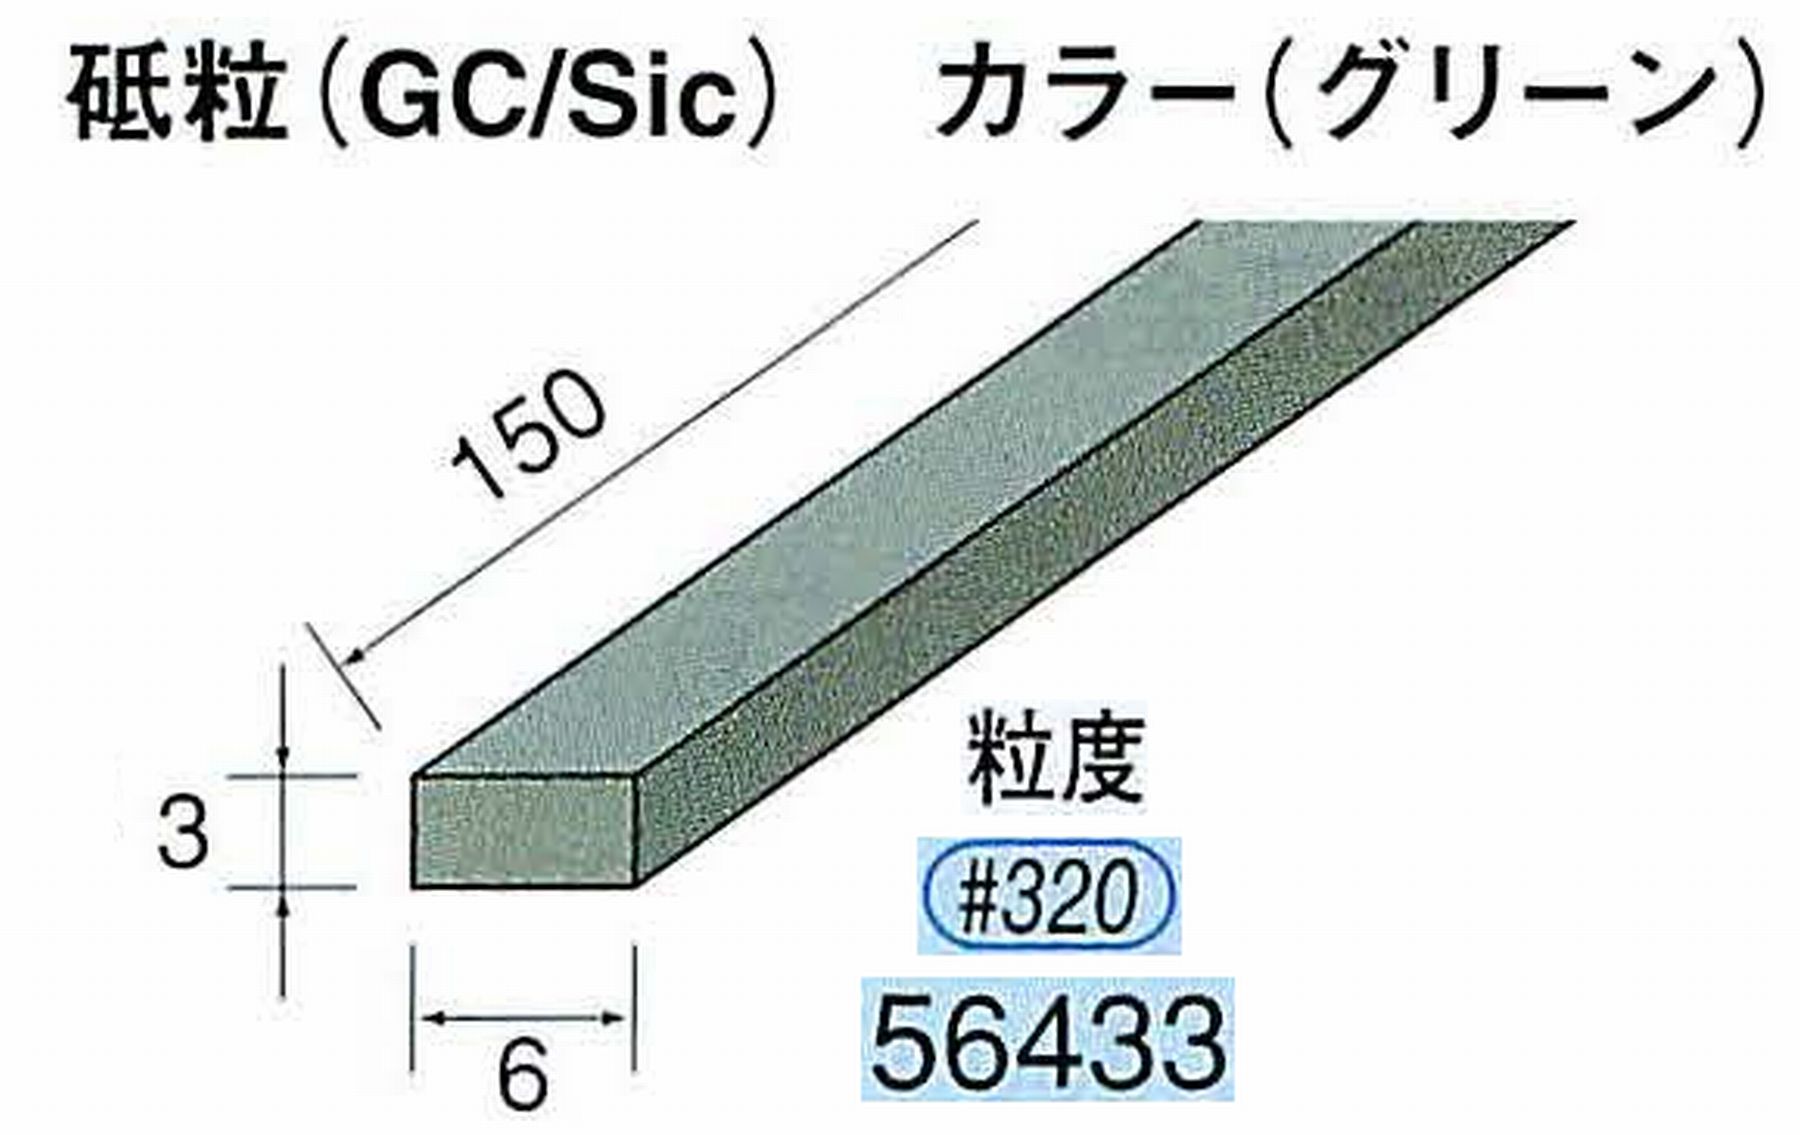 ナカニシ/NAKANISHI スティック砥石 グリーン・フィニッシュシリーズ 砥粒(GC/Sic) 56433